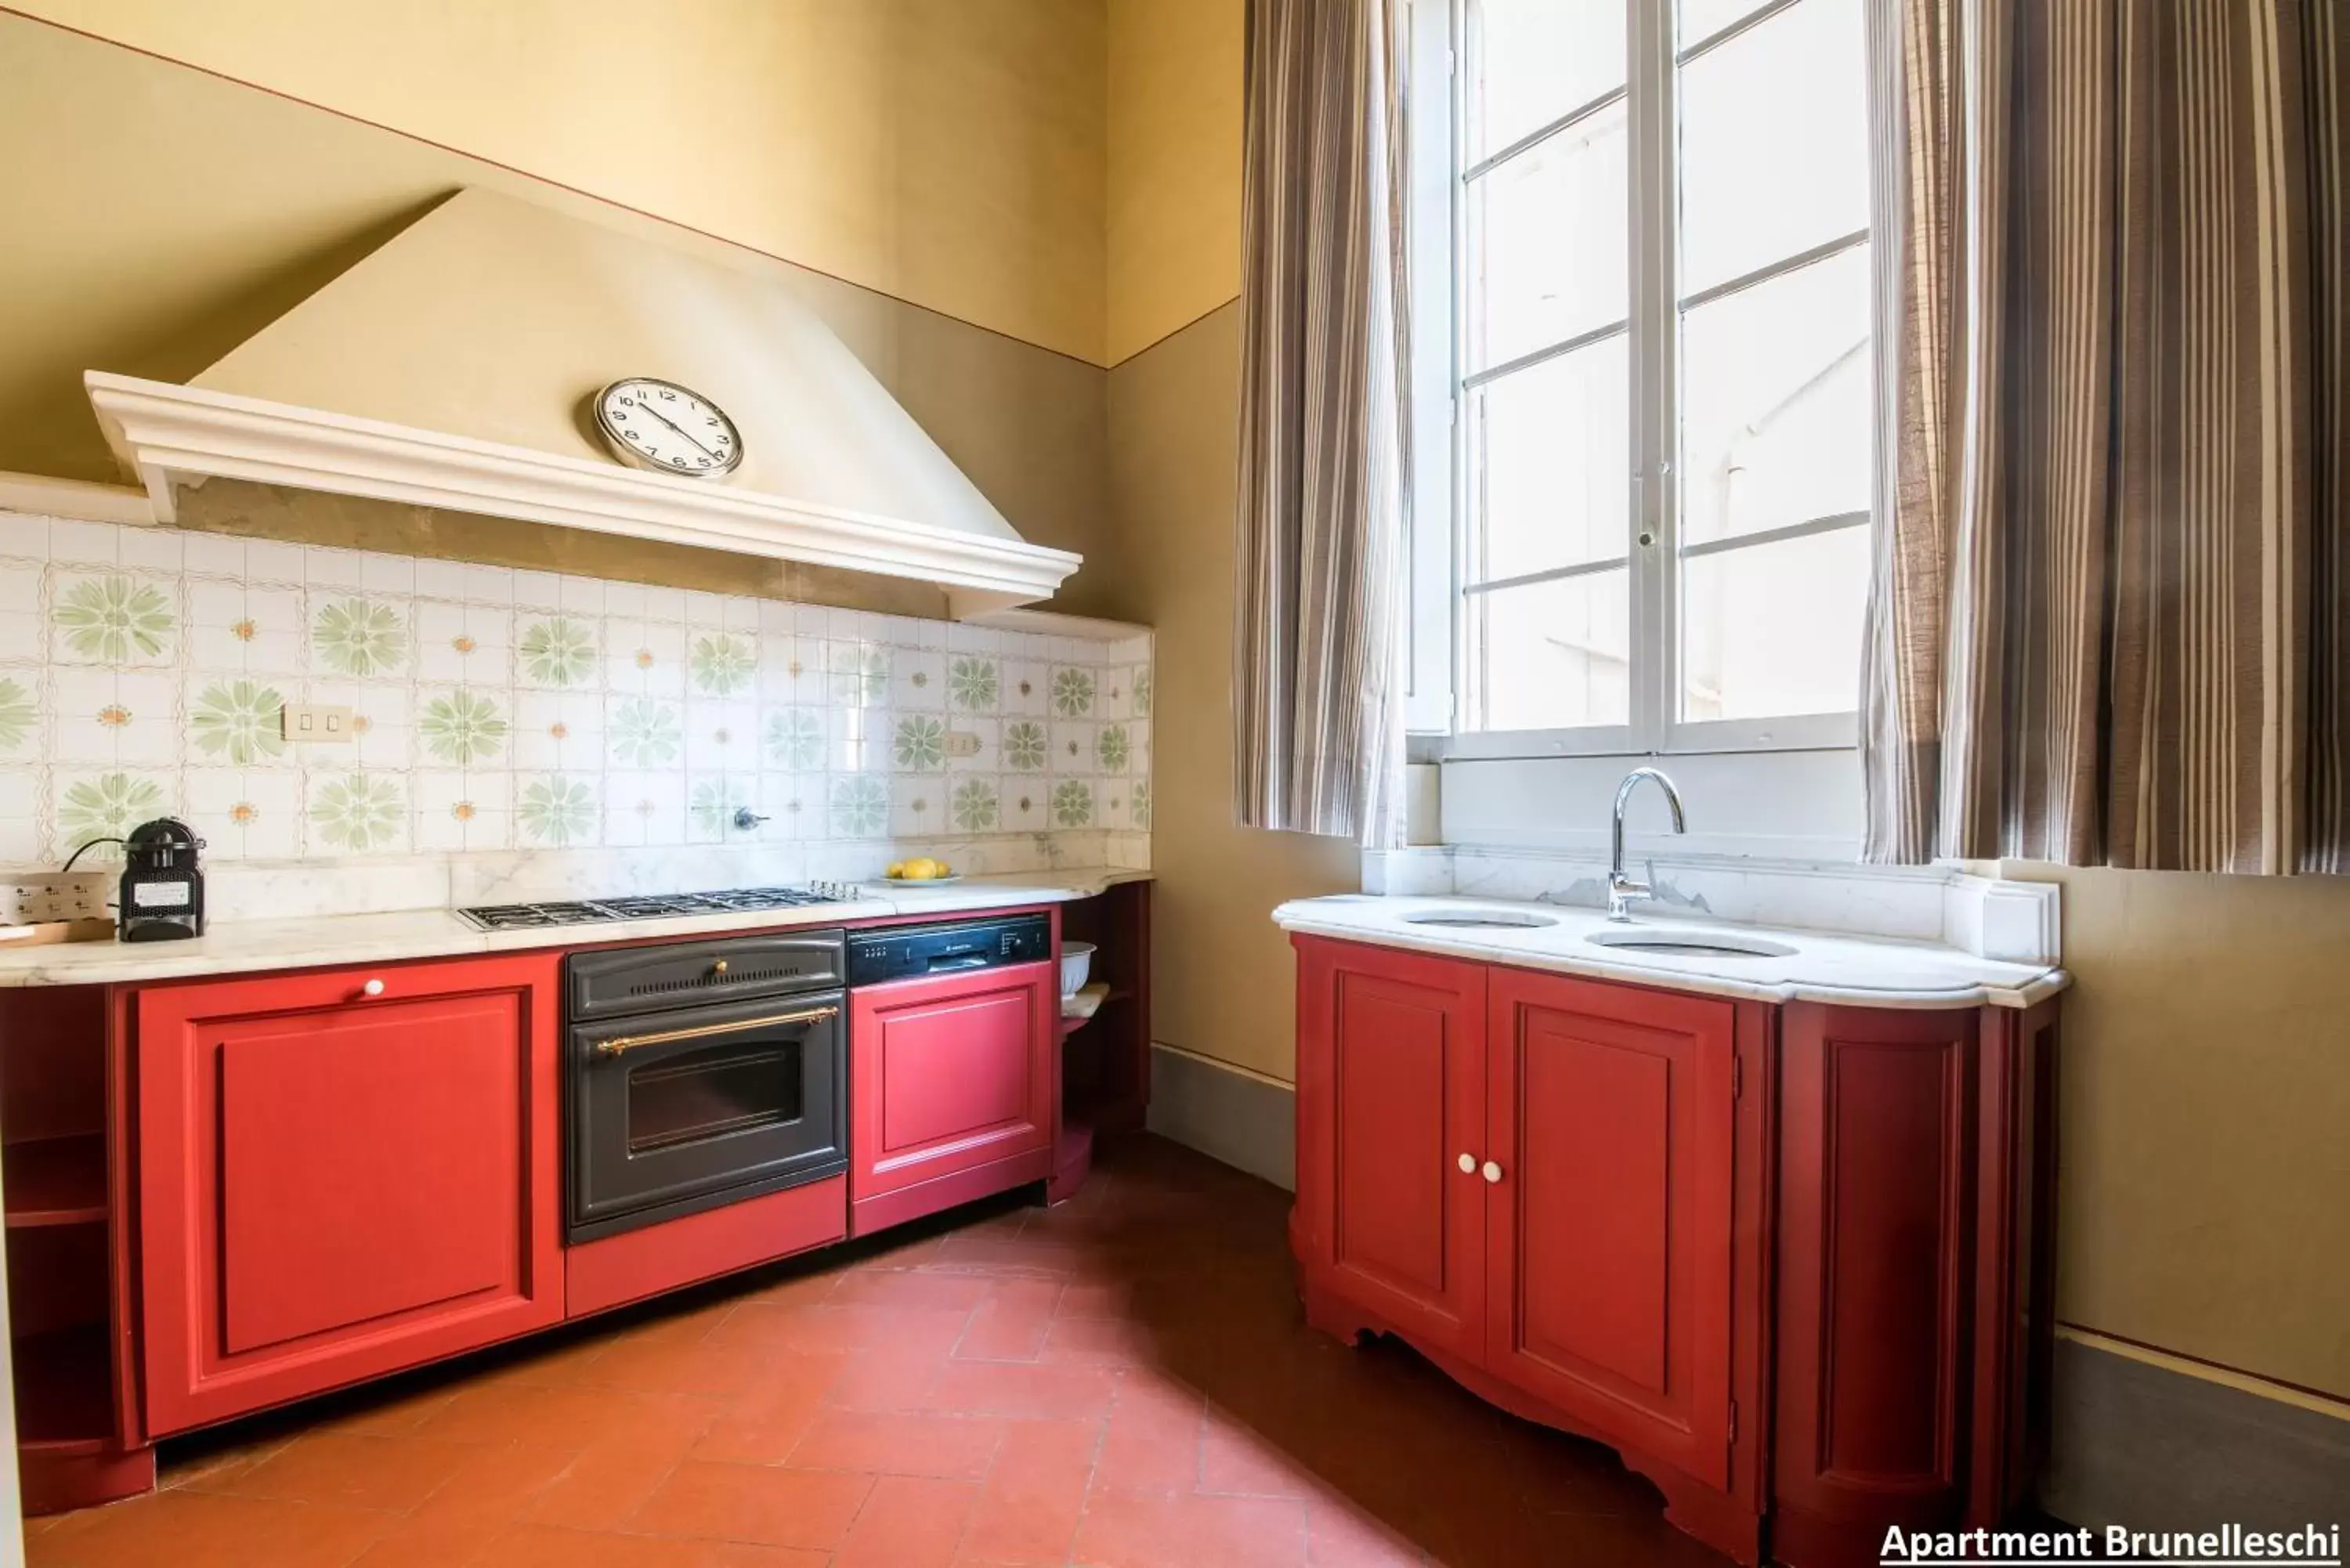 Kitchen or kitchenette, Kitchen/Kitchenette in Palazzo Salviati by Varental